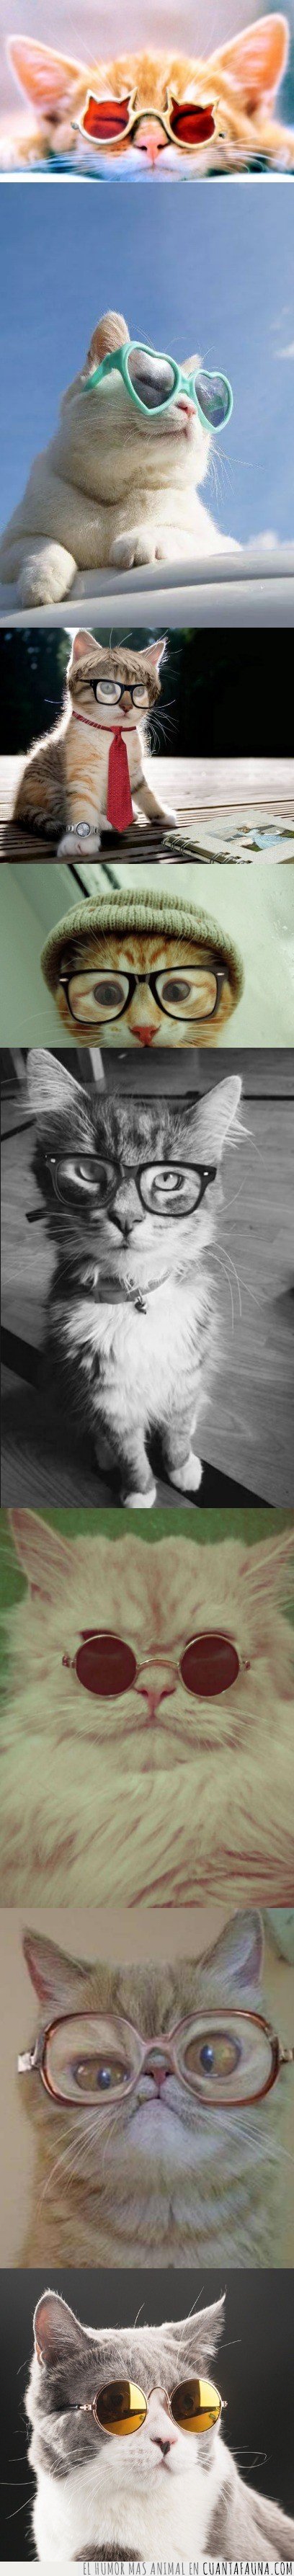 gafas,gato